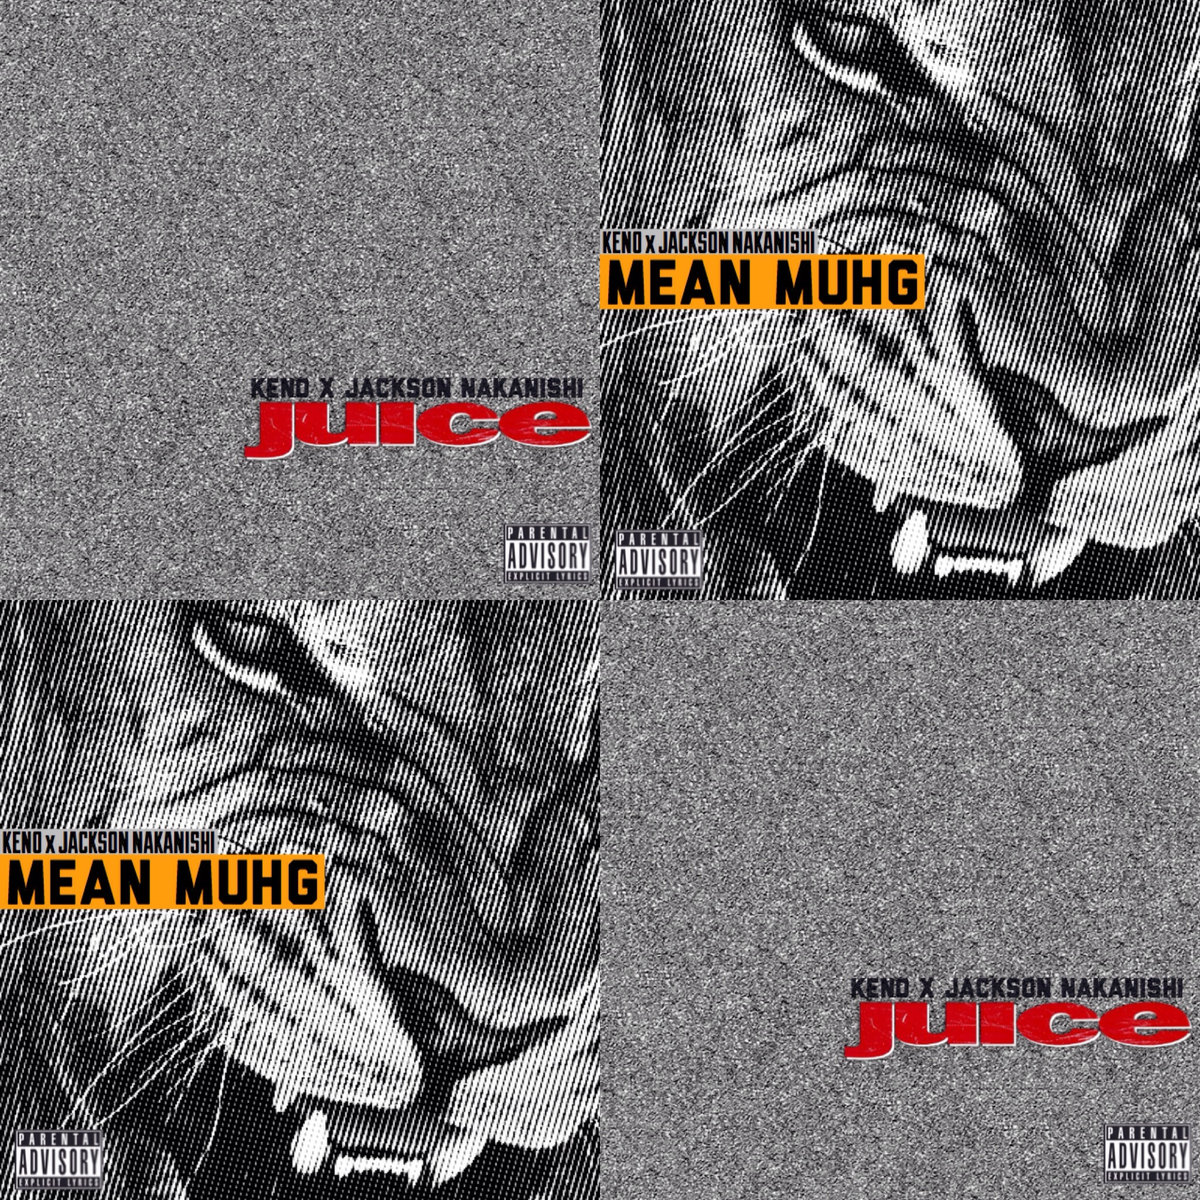 KENO x Jackson Nakanishi — Deluxe Single: “Juice” b/w “Mean Muhg”